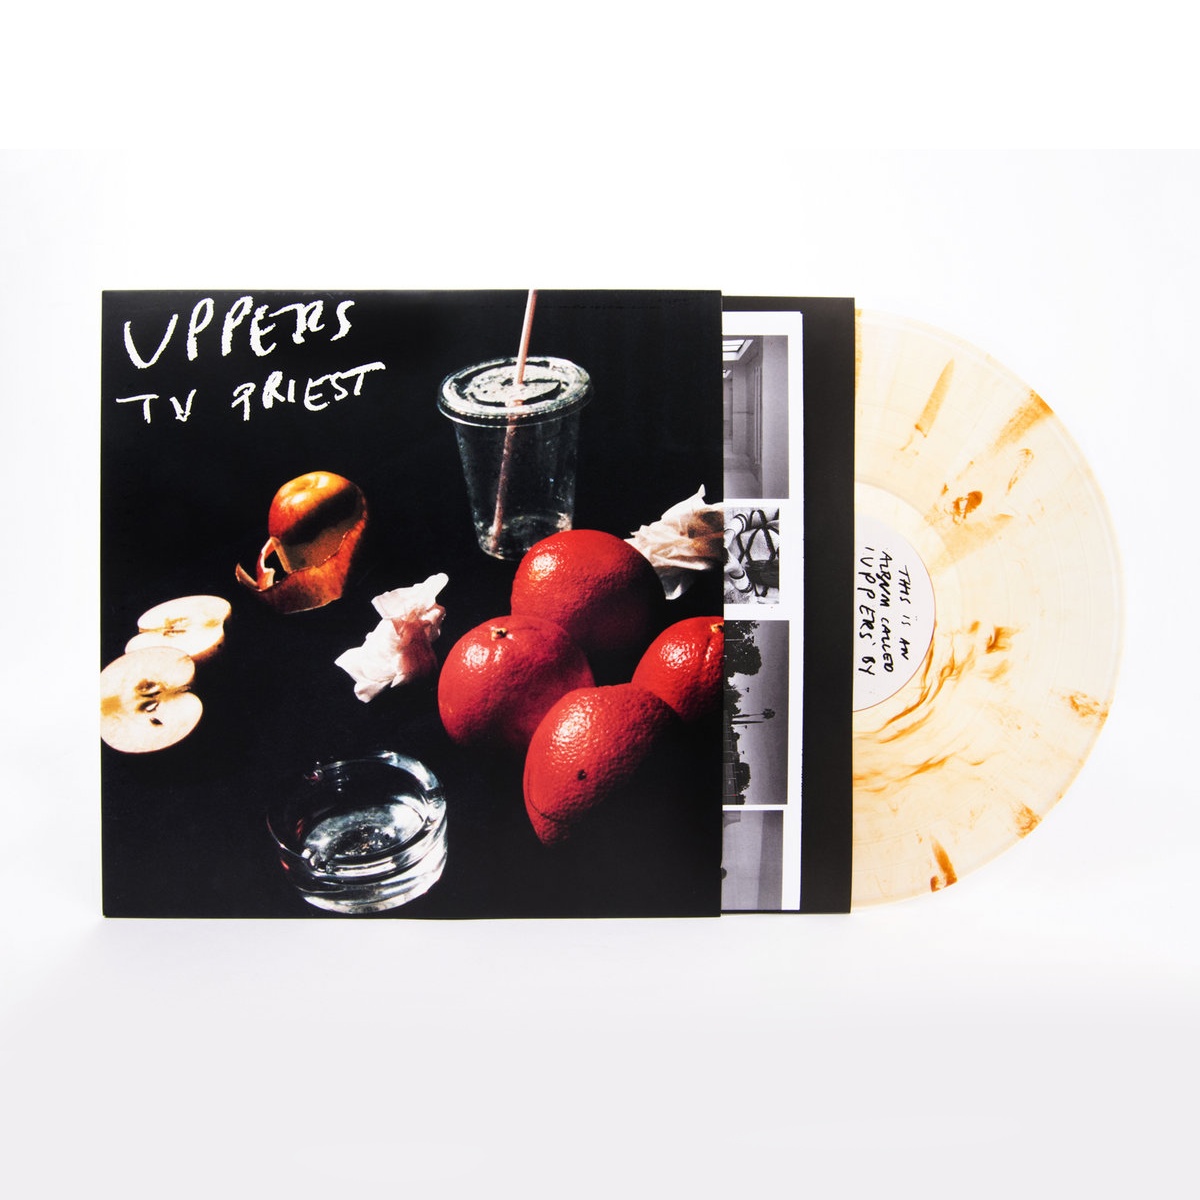 TV Priest - Uppers: Signed Monochrome Splatter Vinyl LP